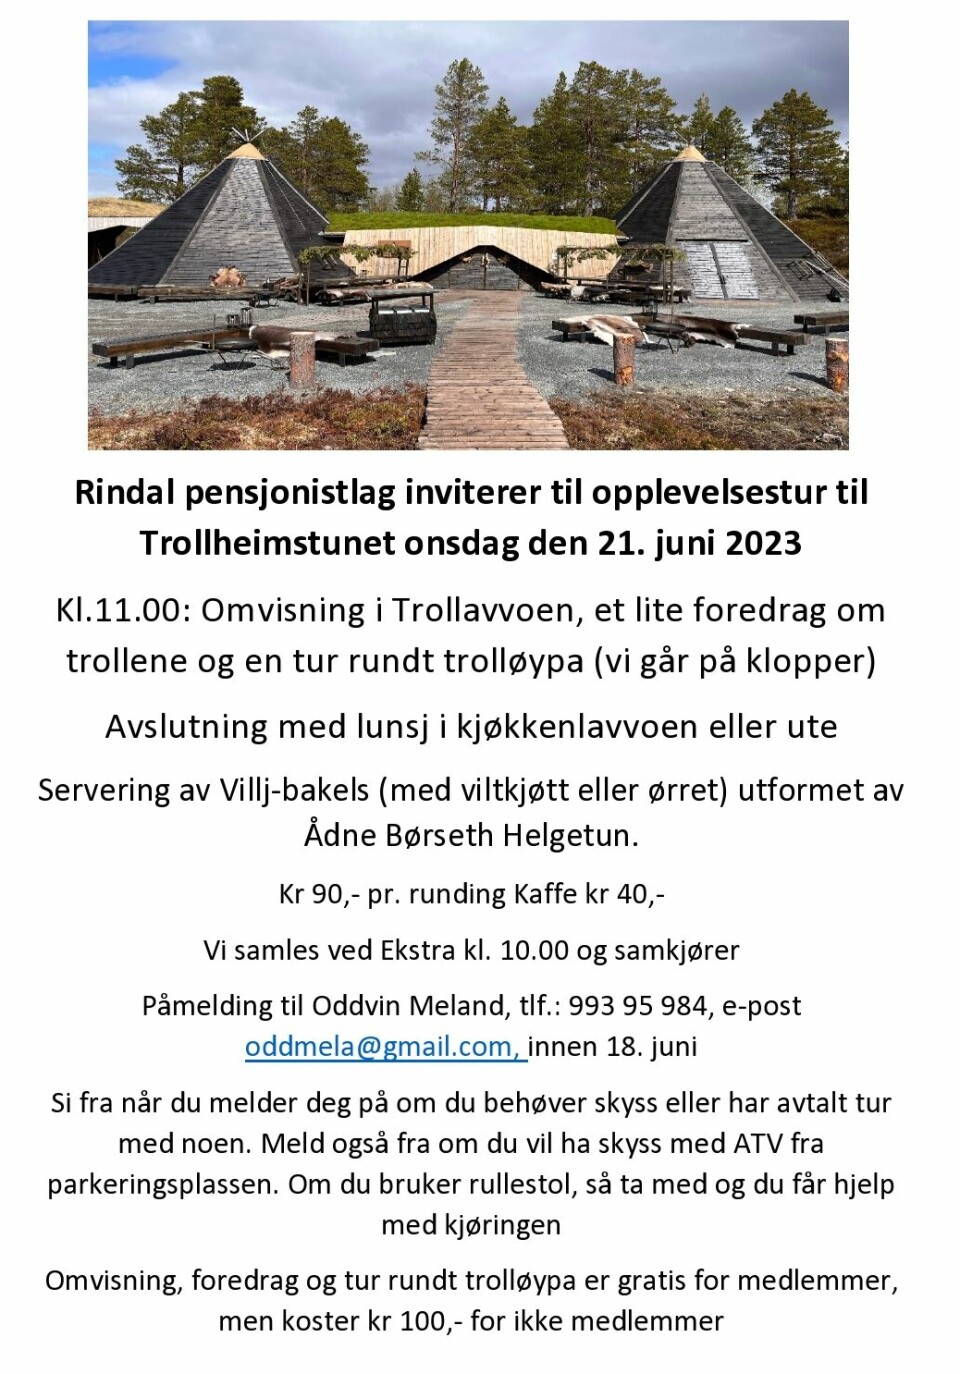 Plakat om Rindal pensonistlag sin tur til Trollheimstunet onsdag 21. juni 2023